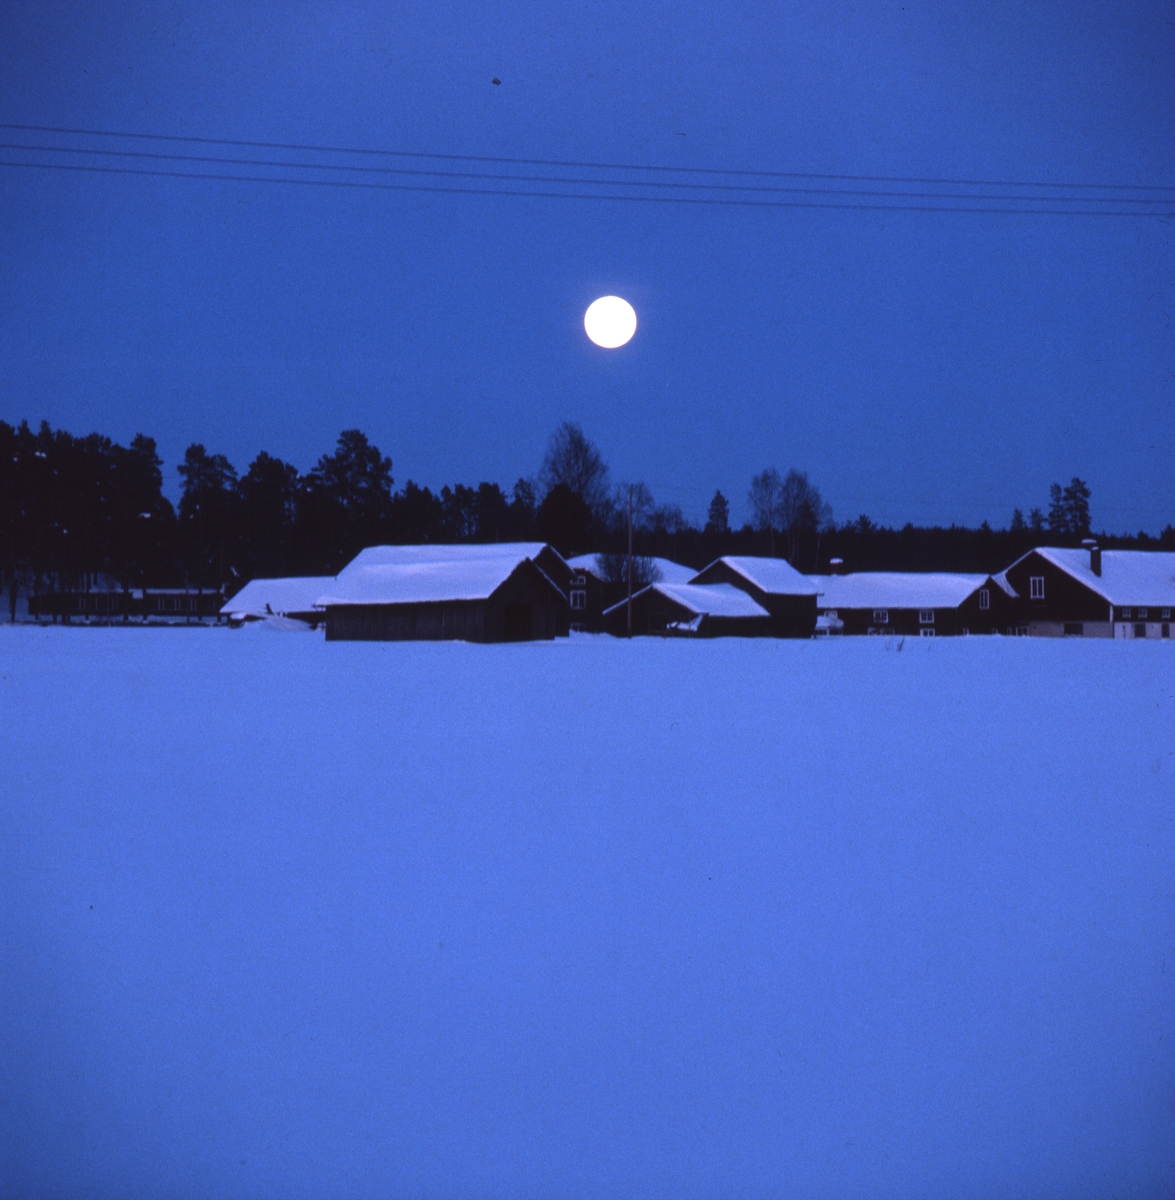 Fullmåne över hälsingegård i Glösbo, Rengsjö. Det är blå skymning och månen lyser på snön på taken.